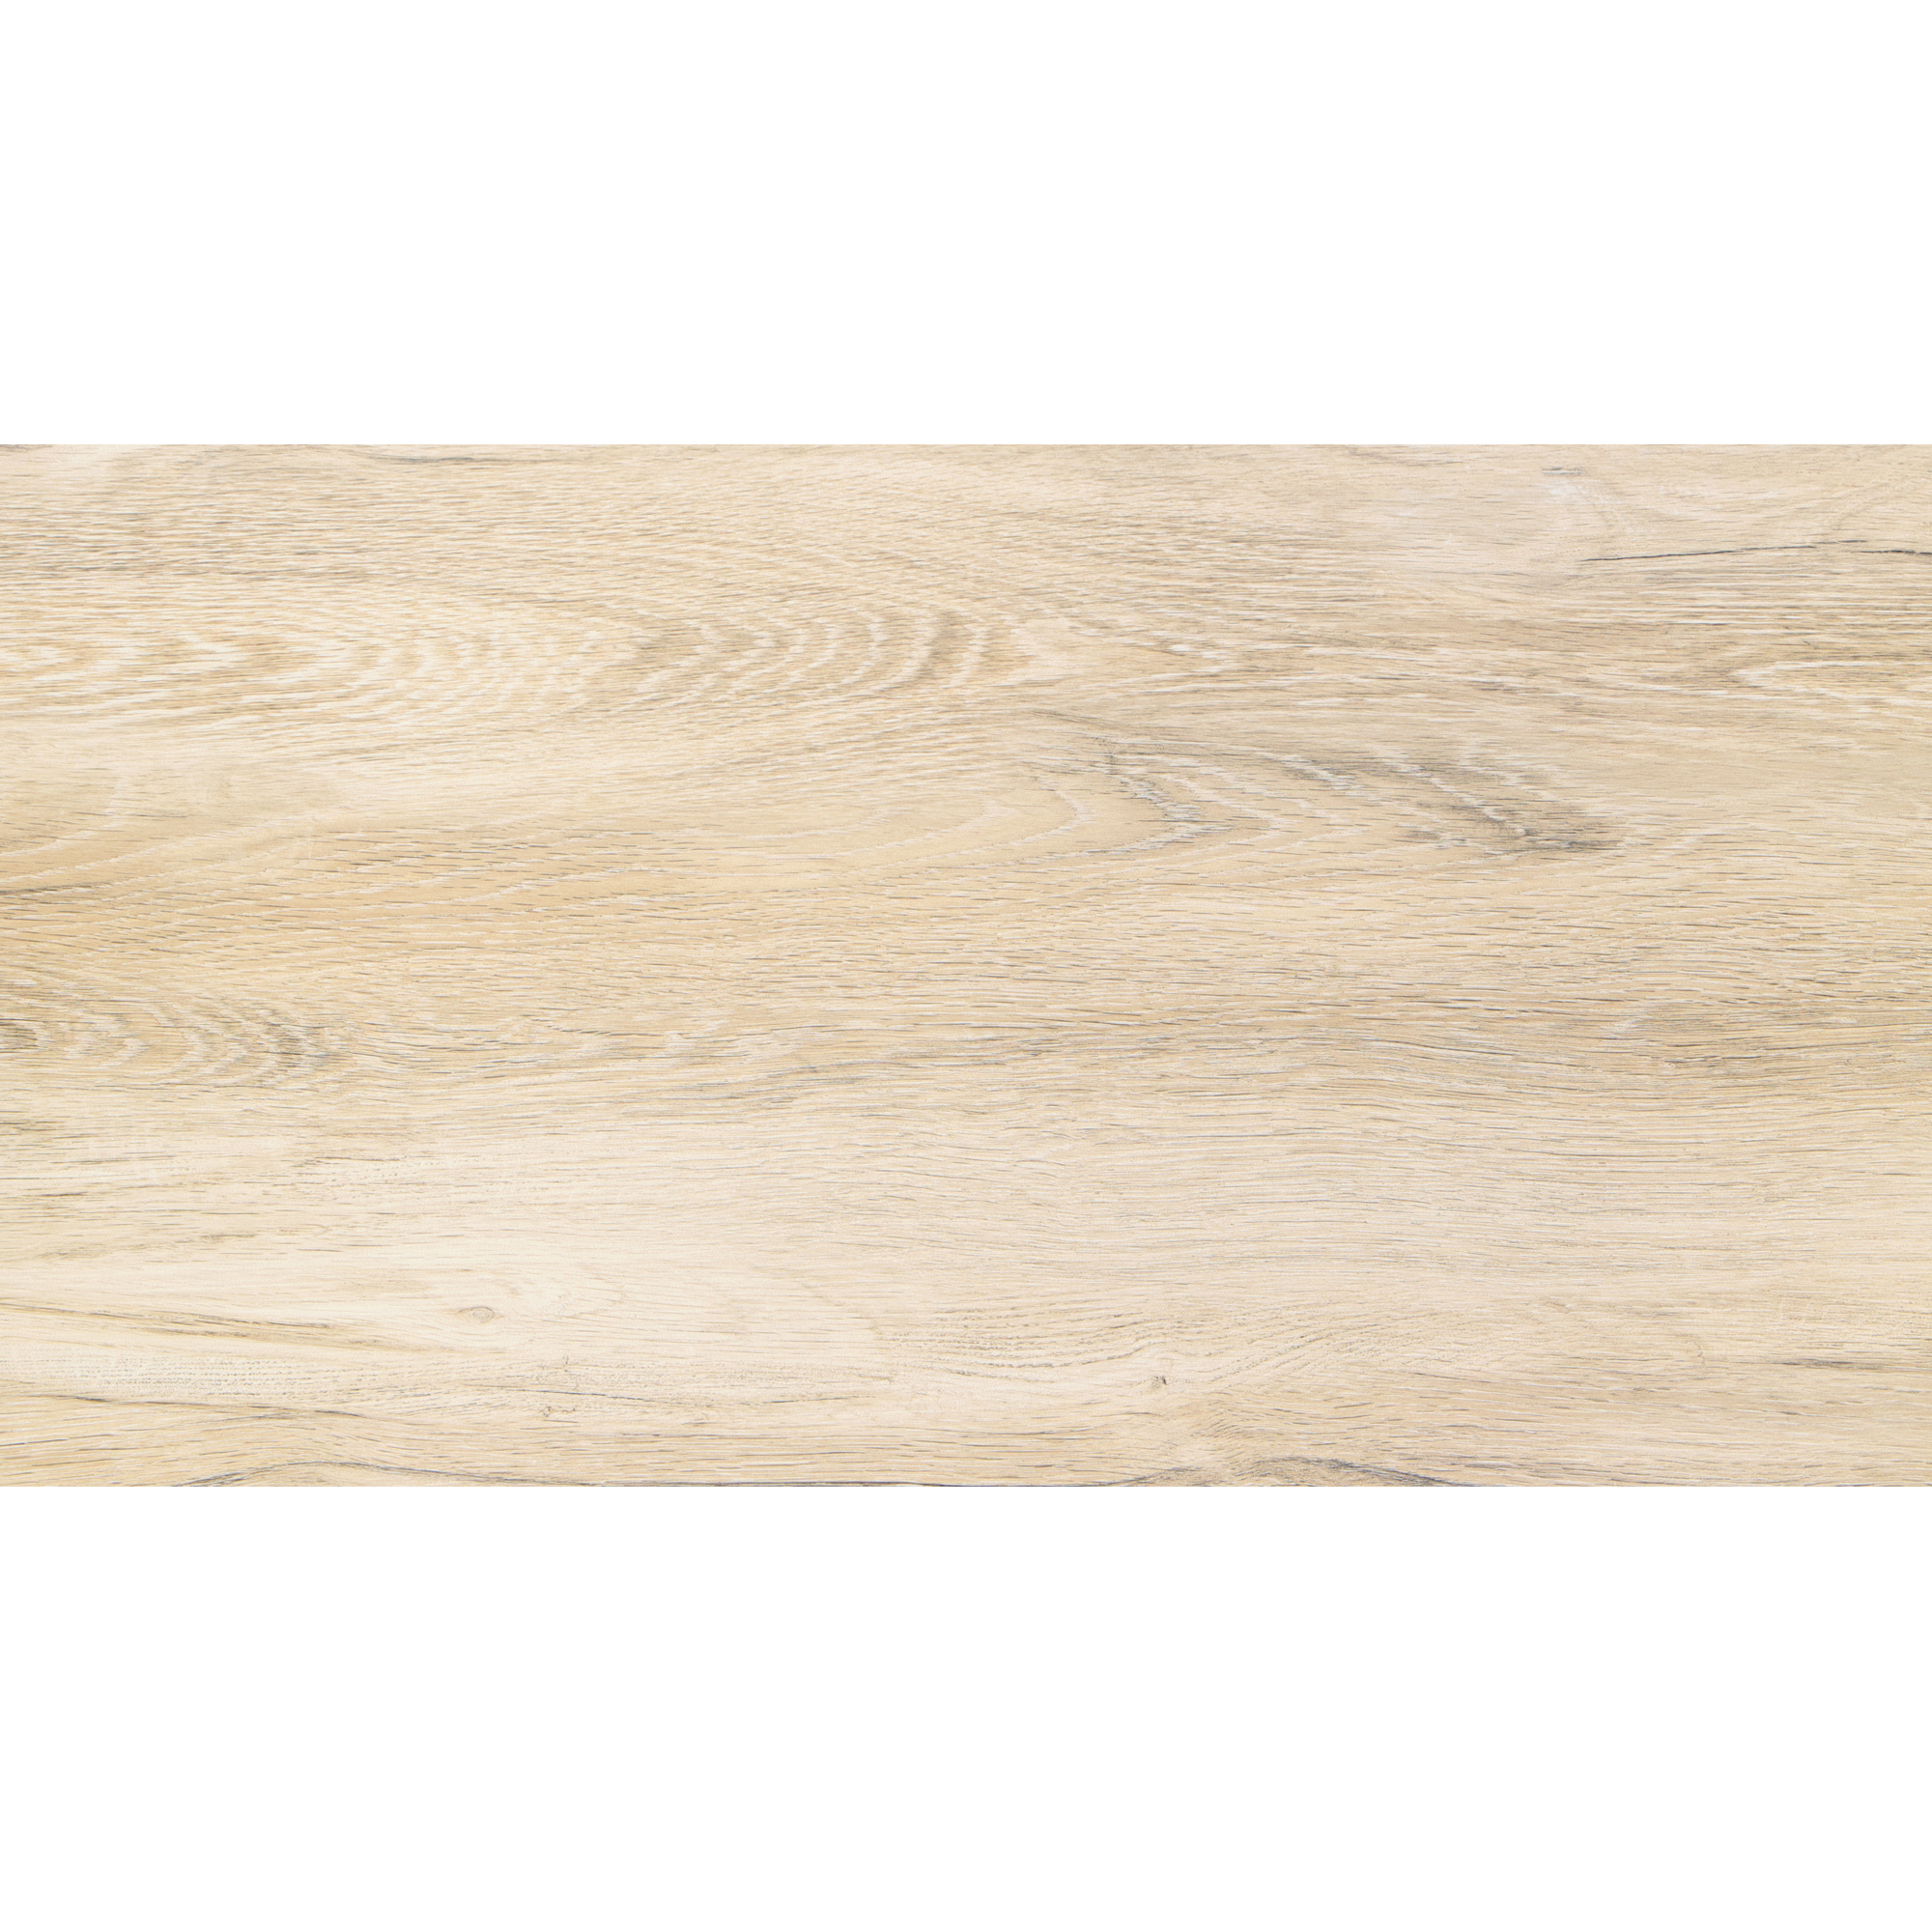 Feinsteinzeug 'Wood' braun-beige 45 x 90 x 2 cm + product picture